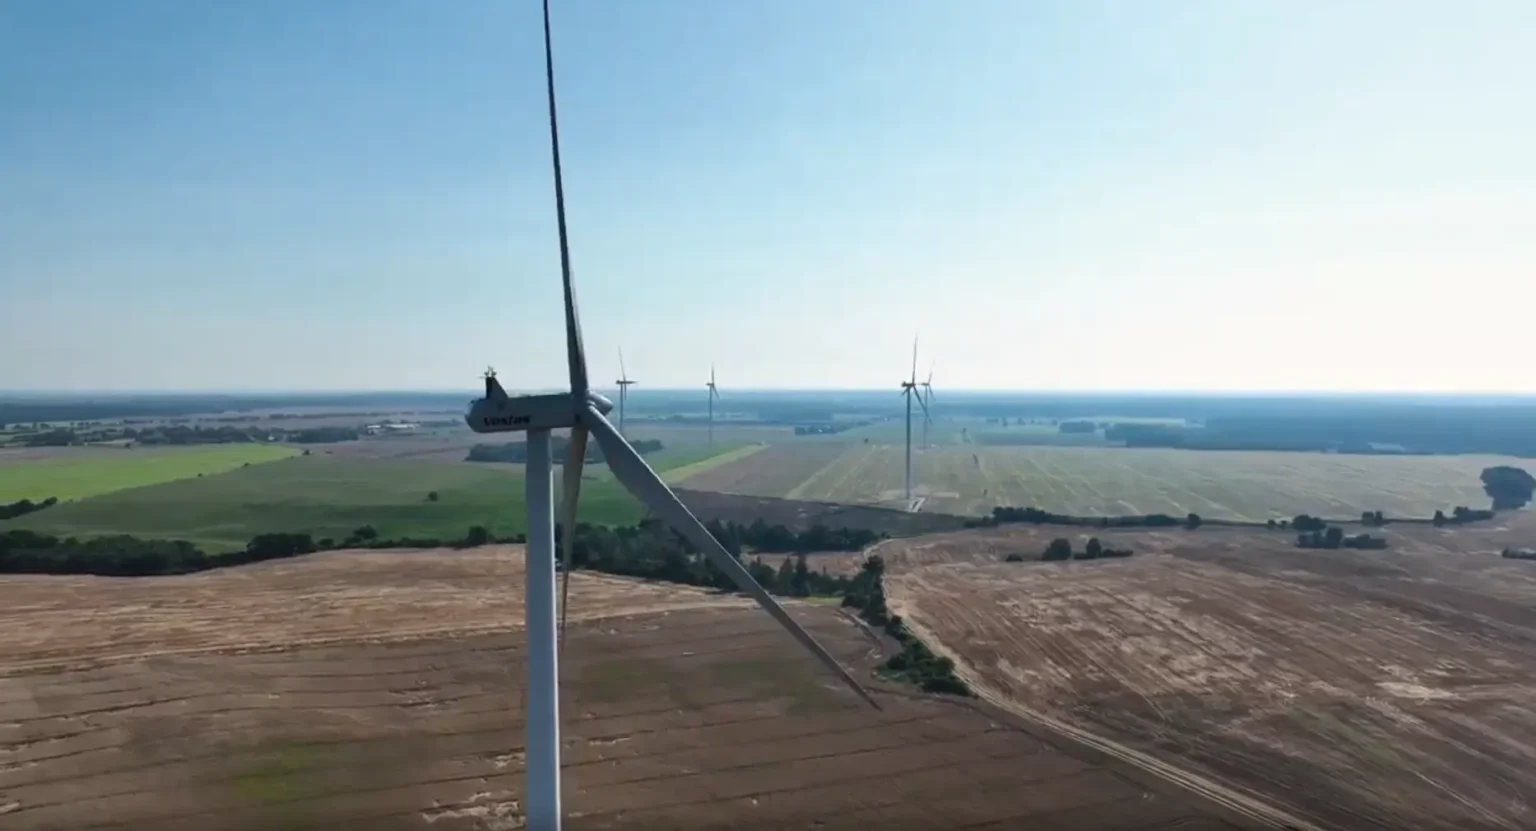 Polenergia należąca do Dominiki Kulczyk uruchomiła farmę wiatrową Piekło zlokalizowaną w Wielkopolsce